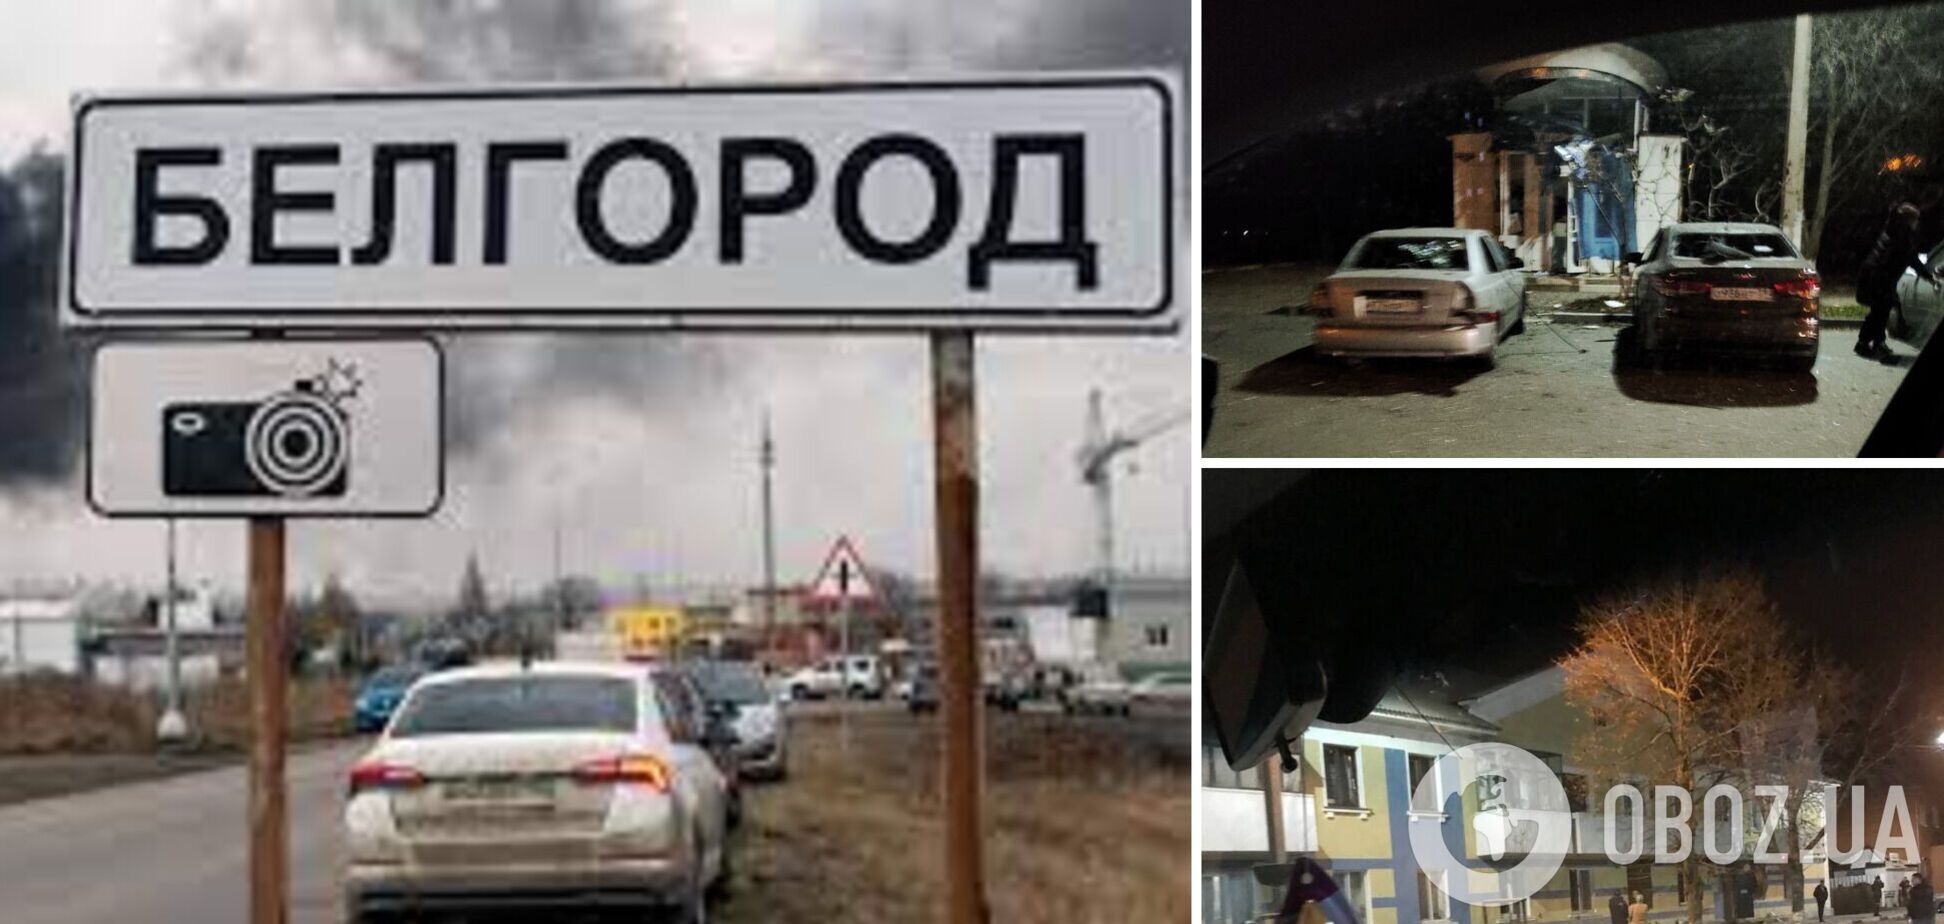 Одна з ракет залишилася в Росії? В Бєлгородській області загинули дві людини і троє отримали поранення. Фото і відео